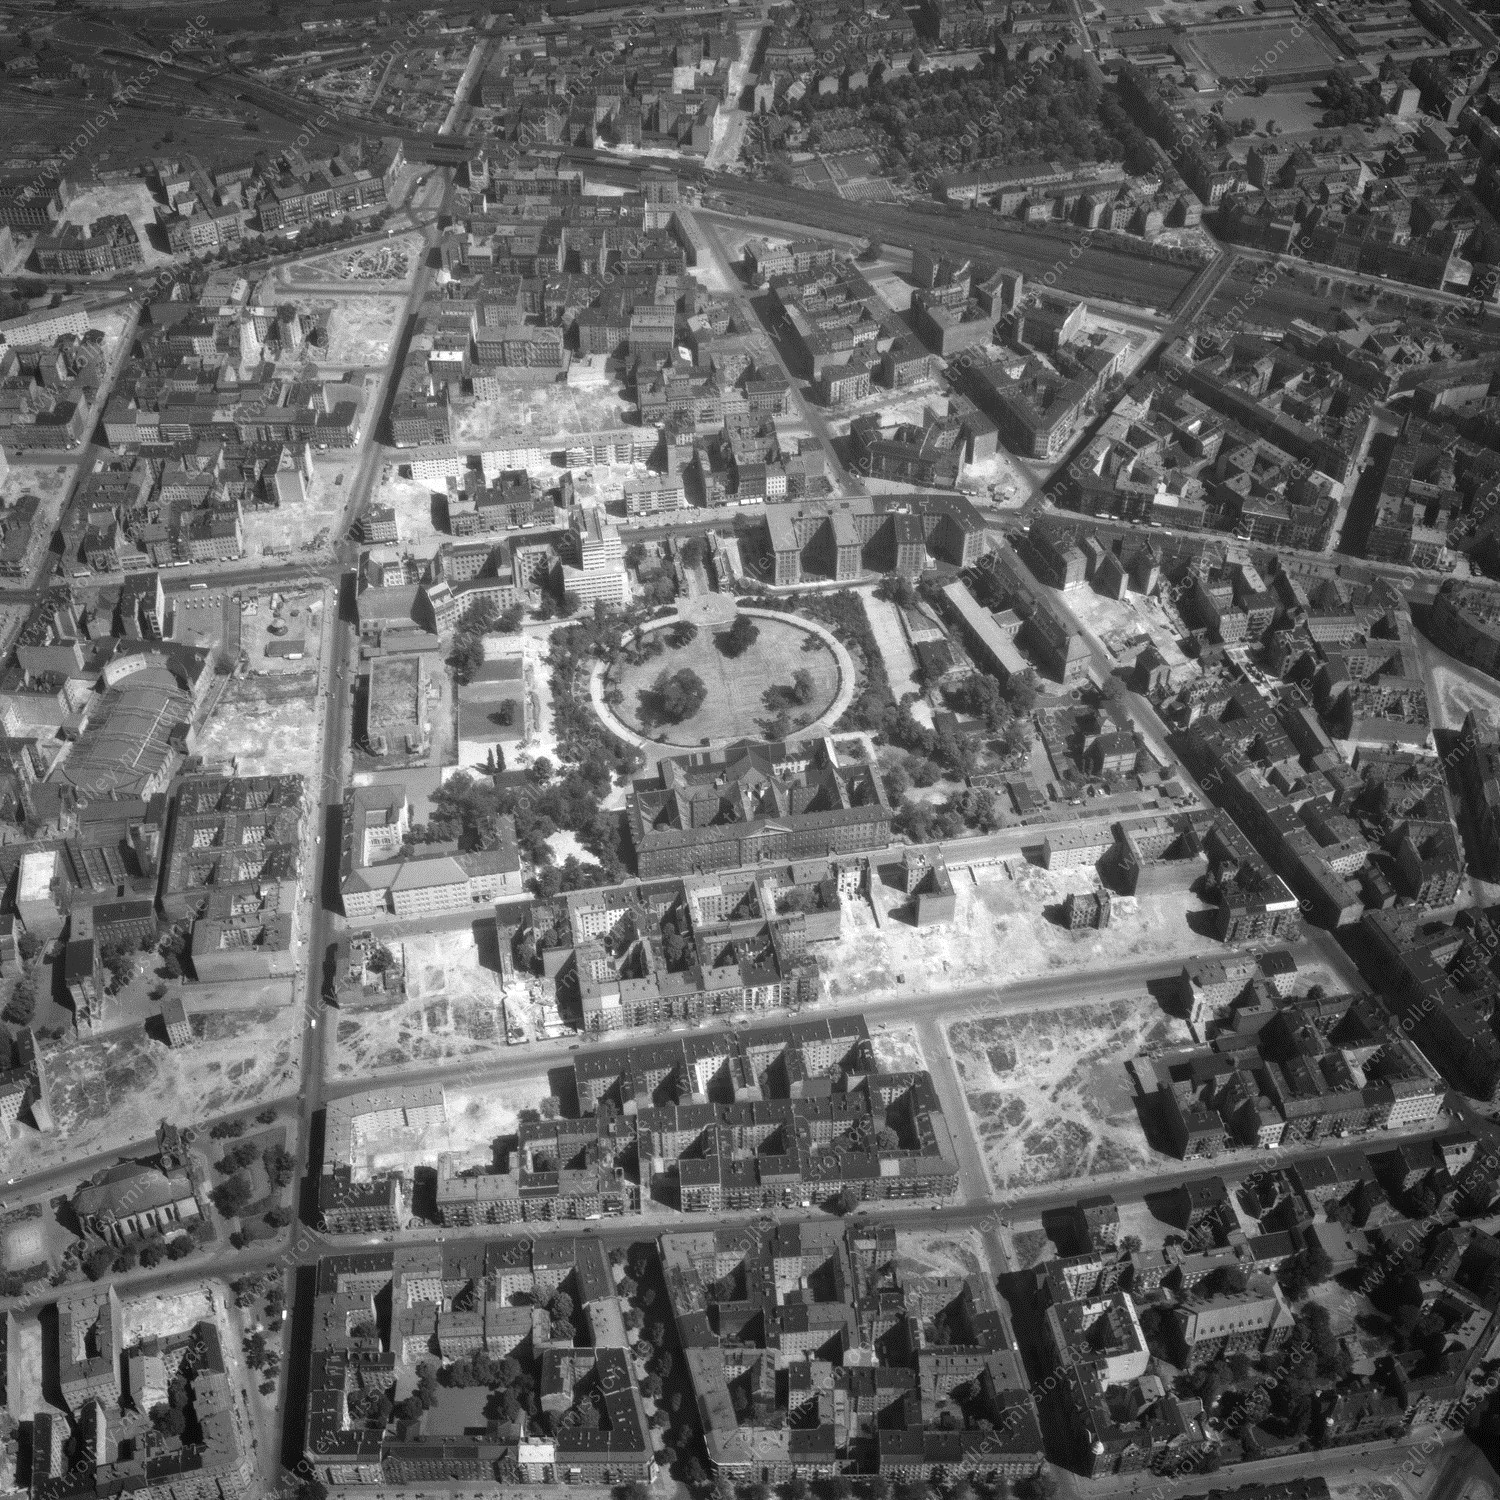 Alte Fotos und Luftbilder von Berlin - Luftbildaufnahme Nr. 04 - Historische Luftaufnahmen von West-Berlin aus dem Jahr 1954 - Flugstrecke Golf